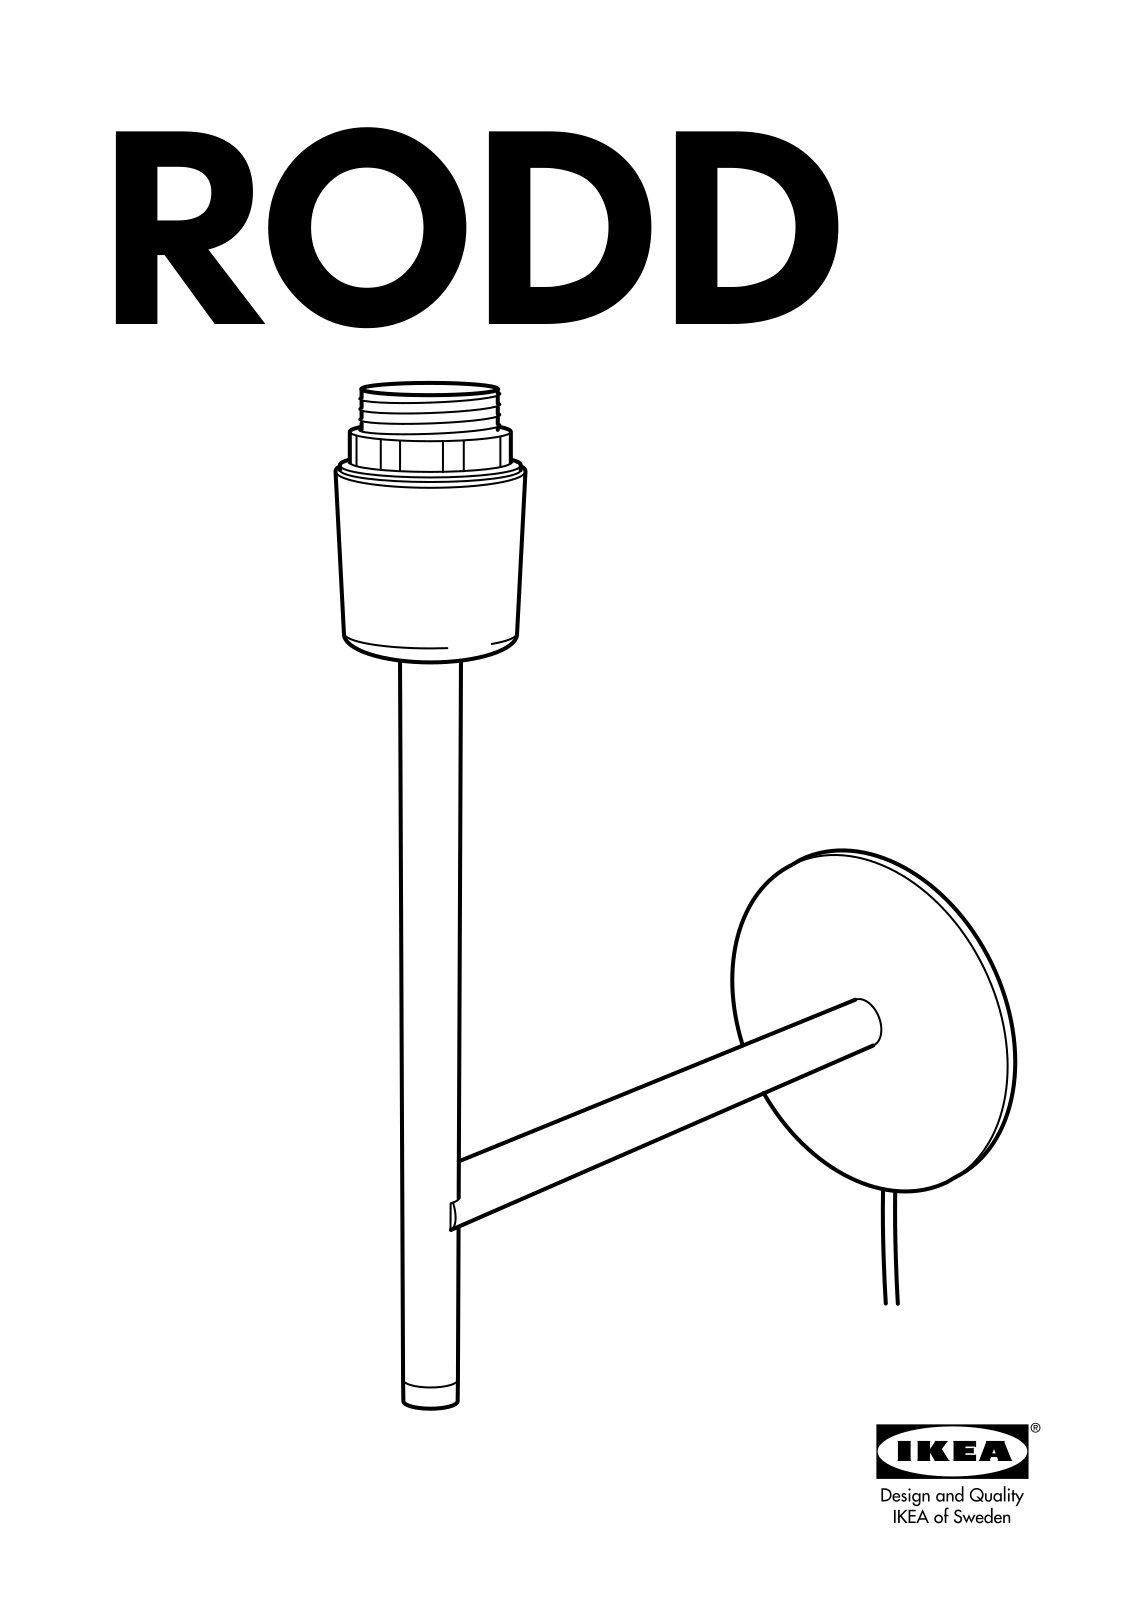 IKEA RODD User Manual